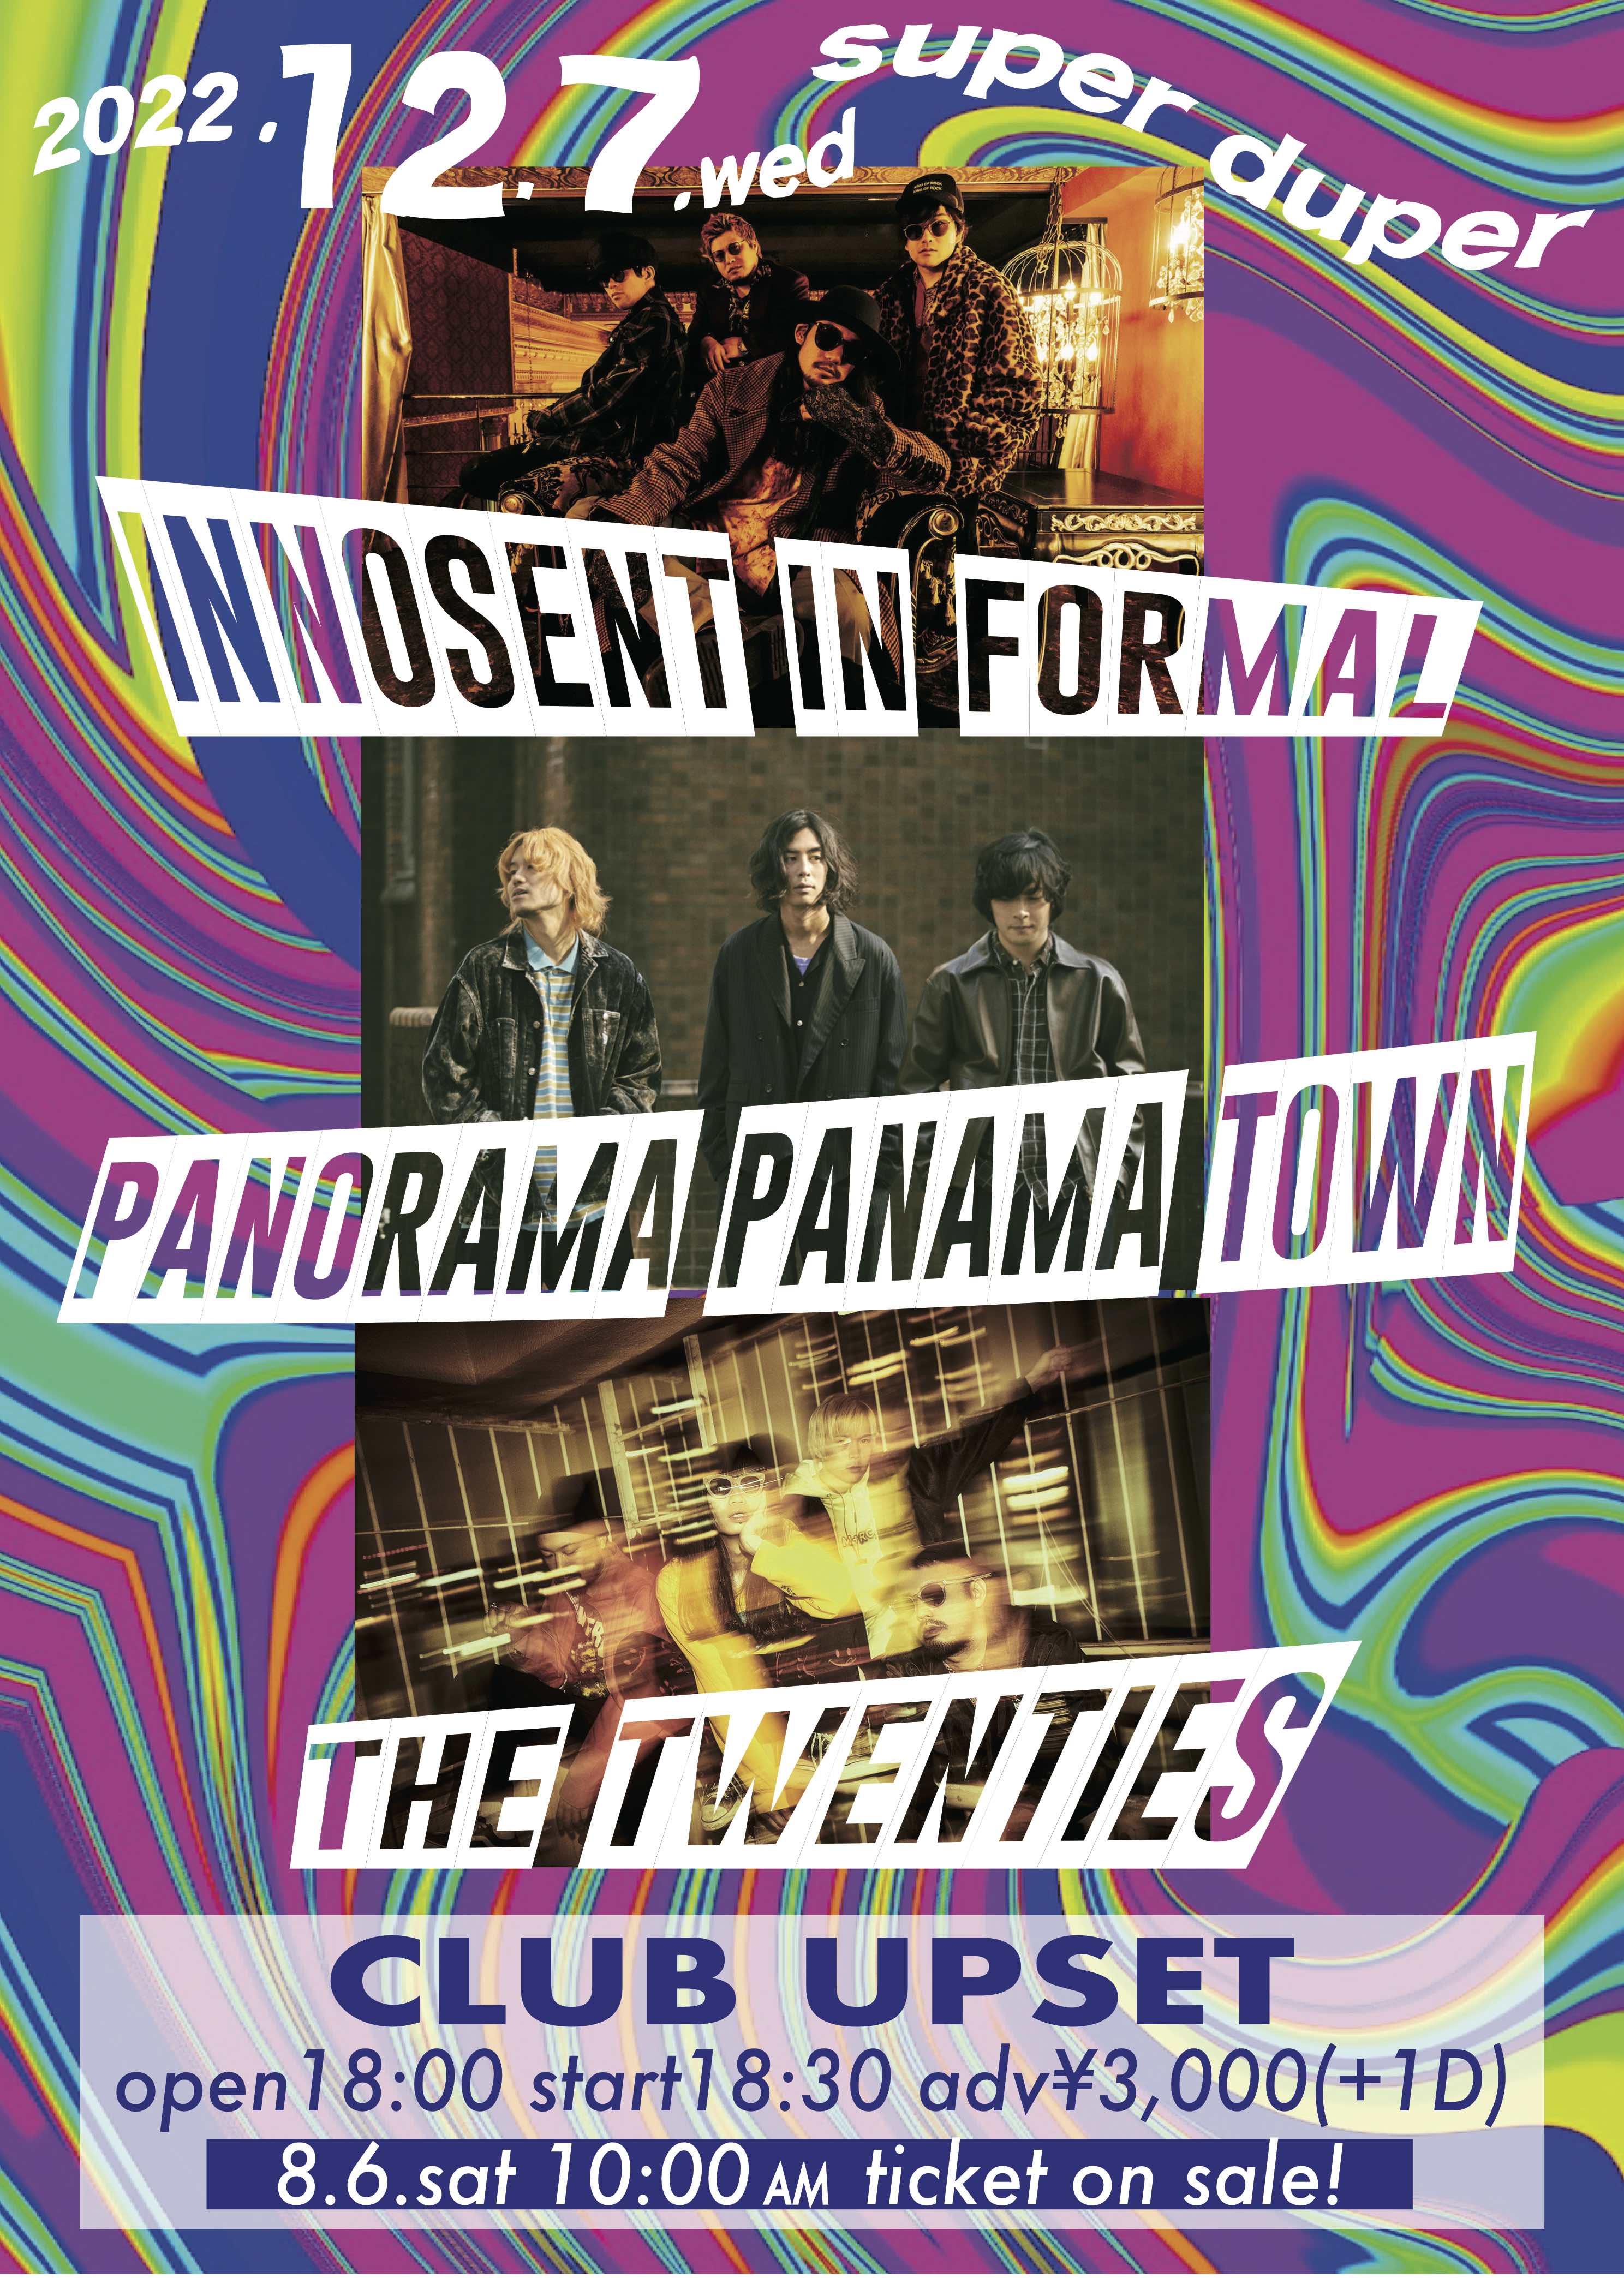 〈先着先行〉12/7(水) INNOSENT in FORMAL/Panorama Panama Town/the twenties